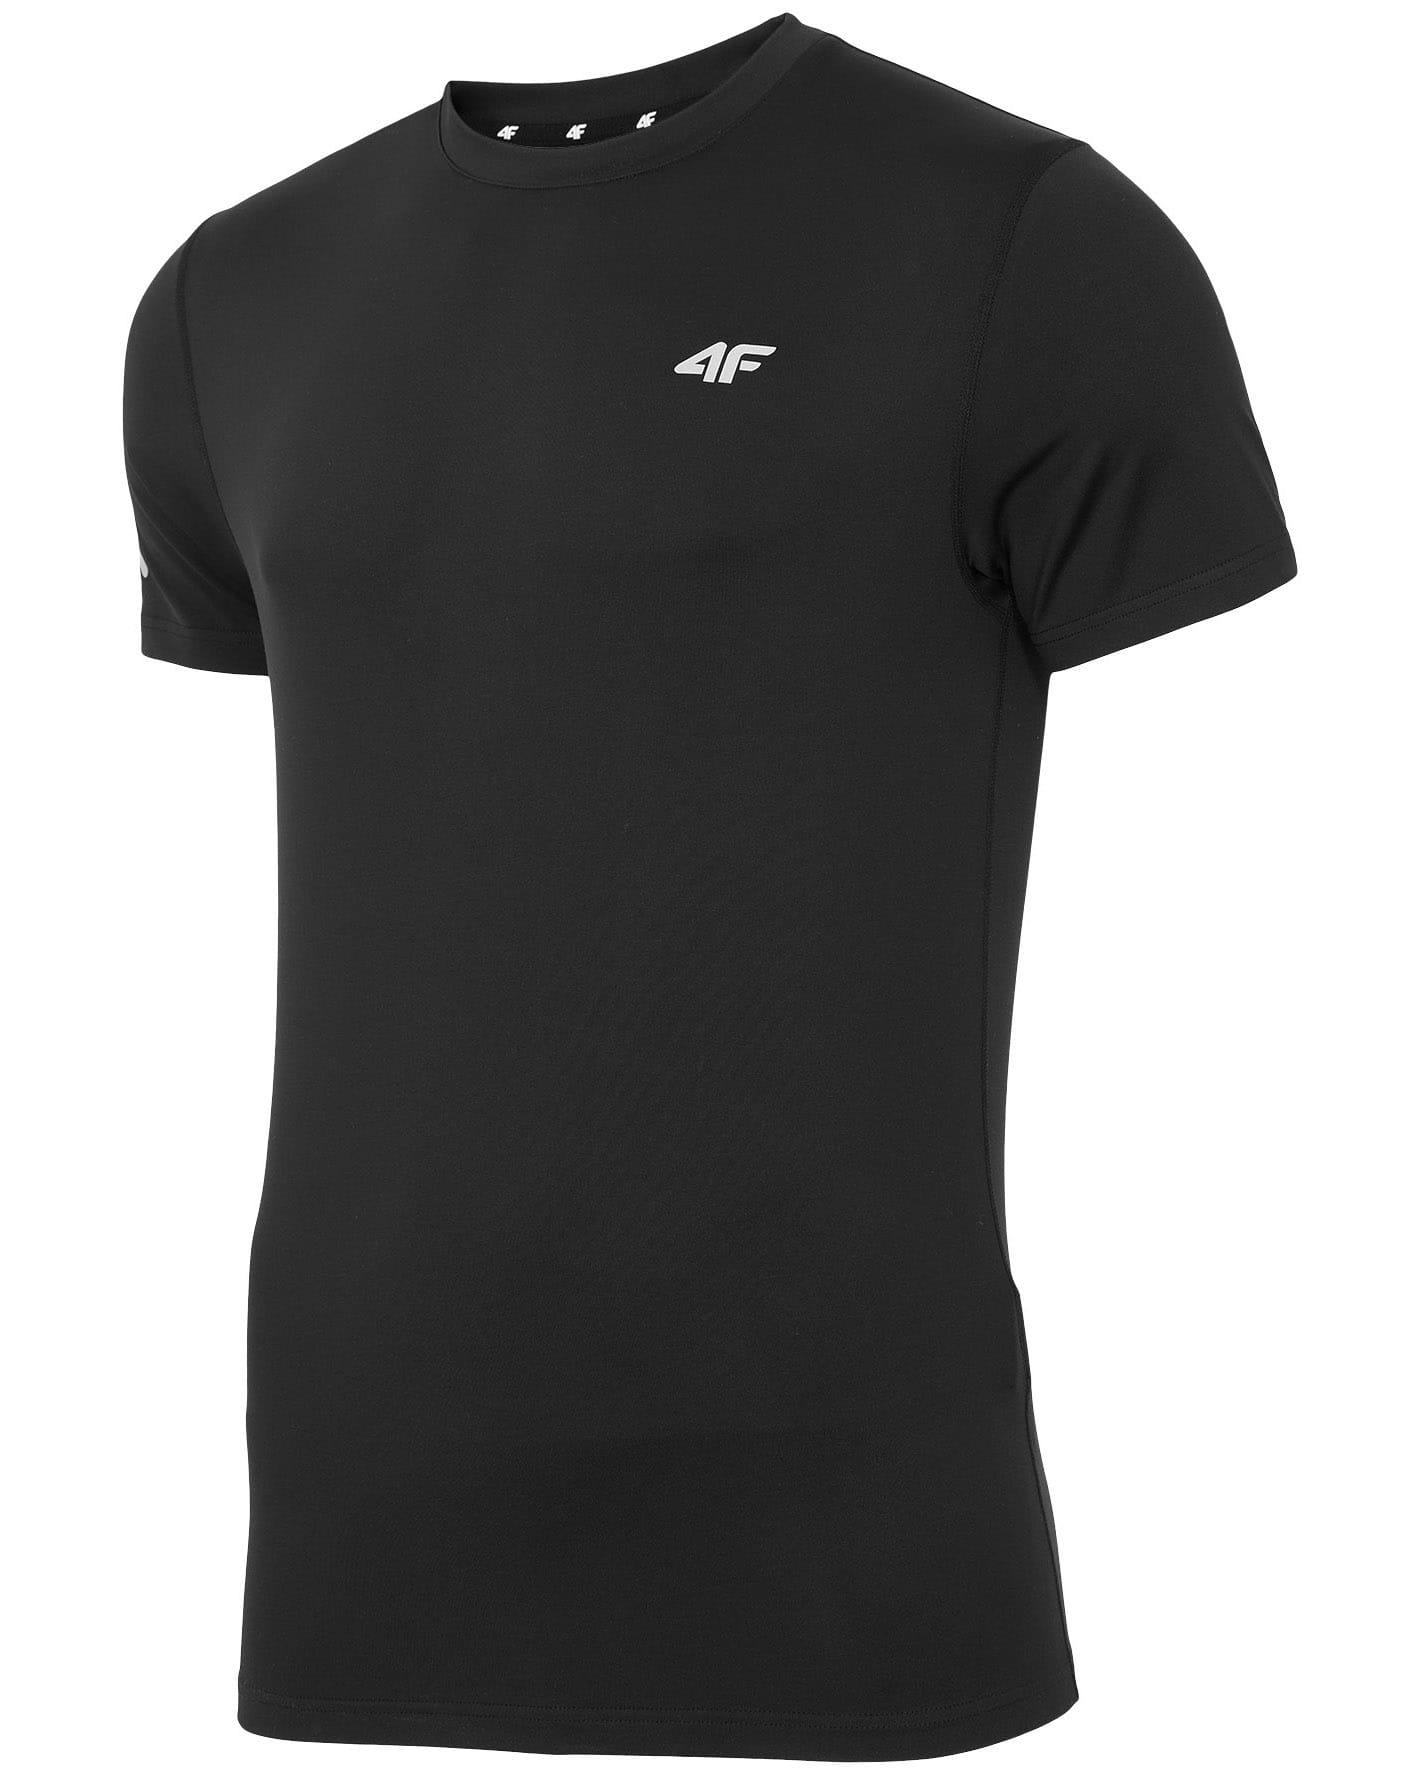 4F T-Shirt Fitness - Black